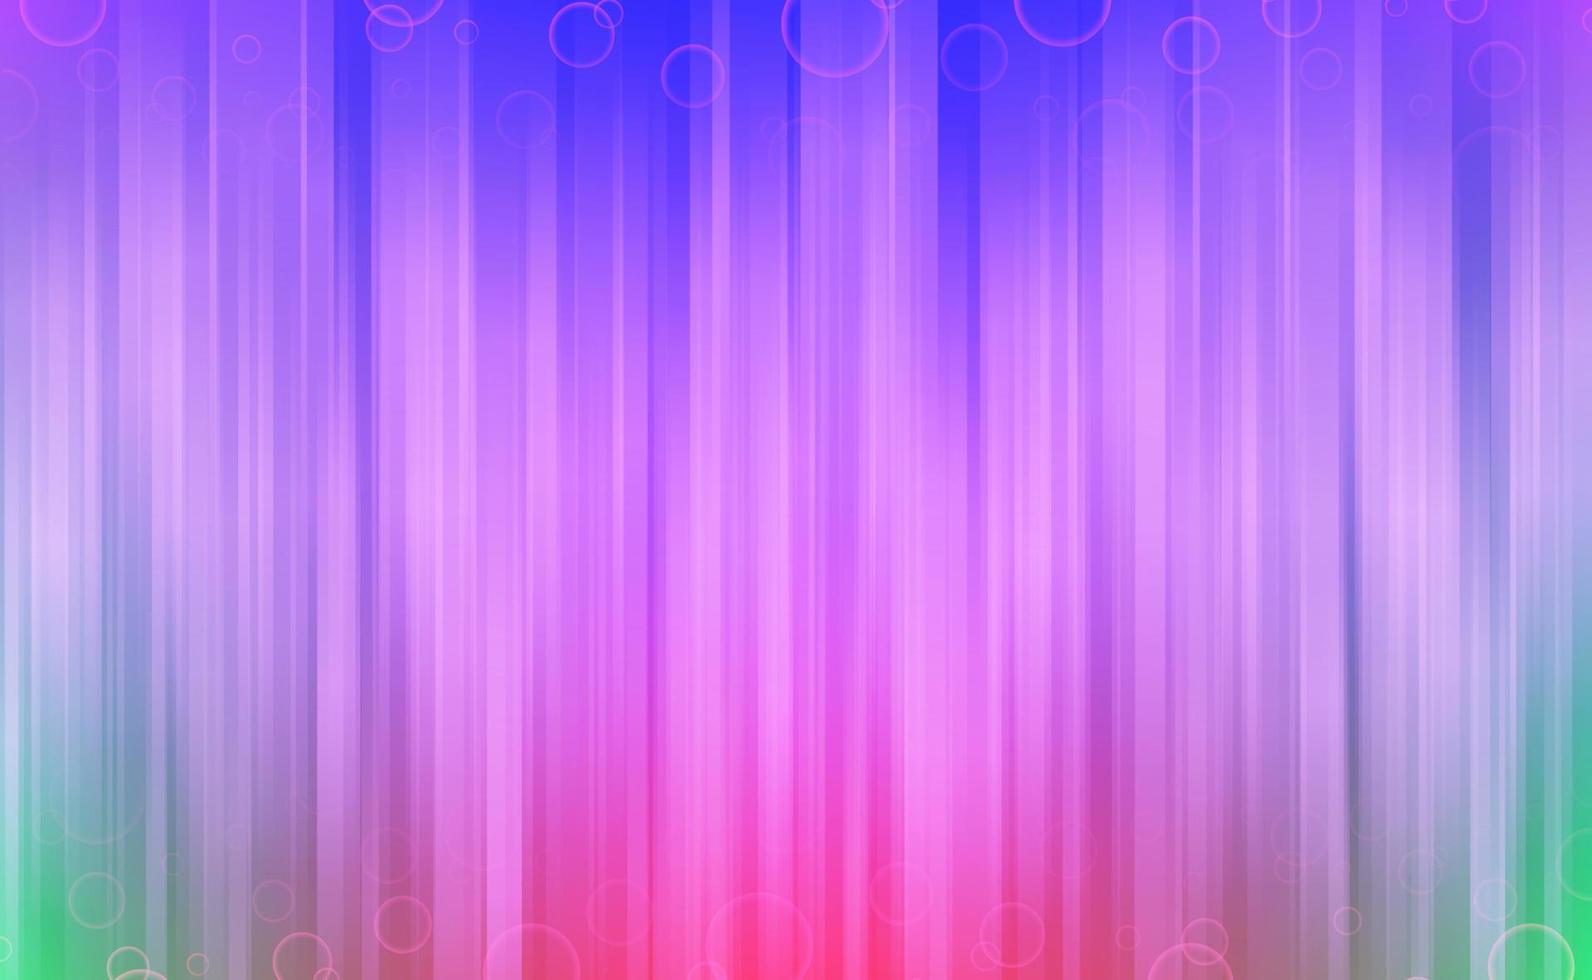 kleurrijke verticale lijnen met cirkel bubbels abstracte achtergrond. vector illustratie